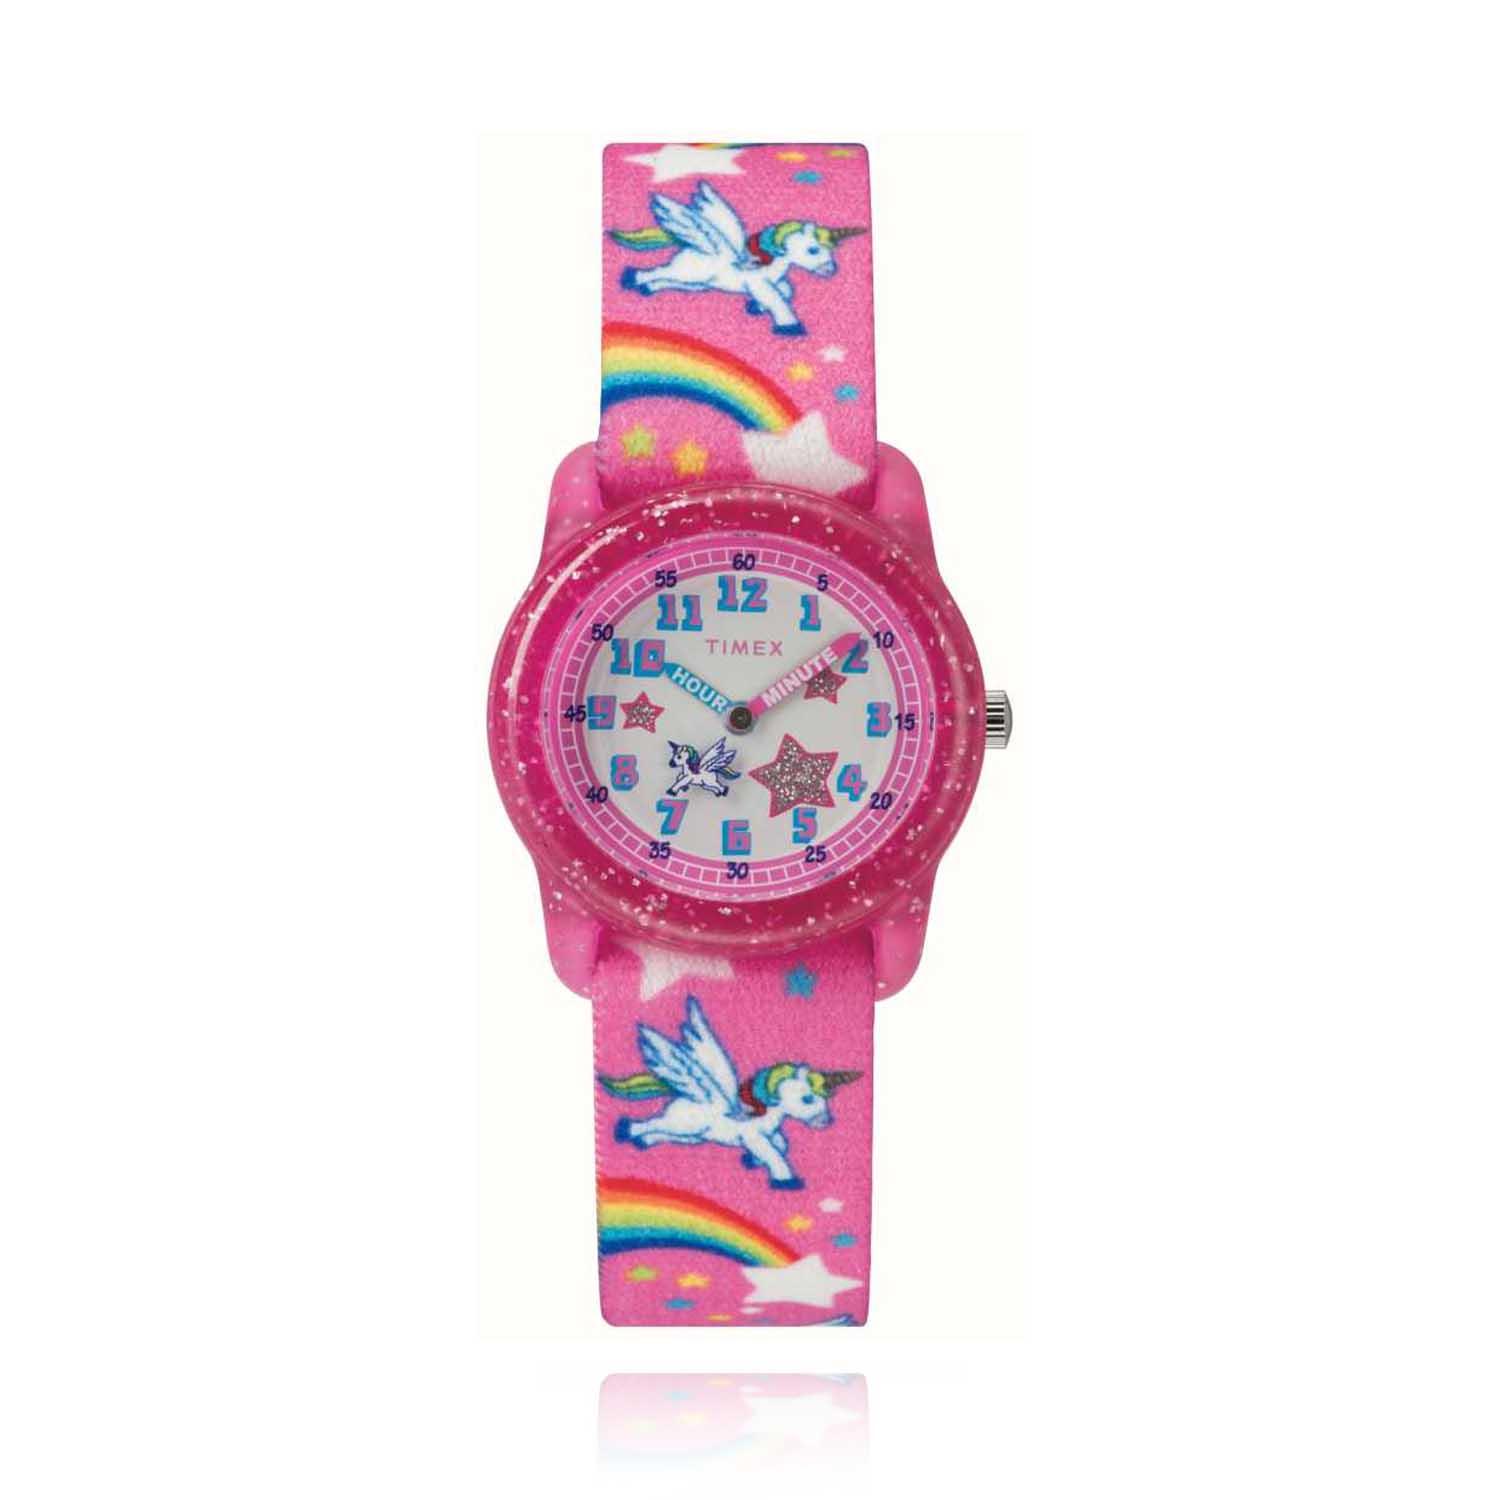 Timex Rainbow Unicorn Watch